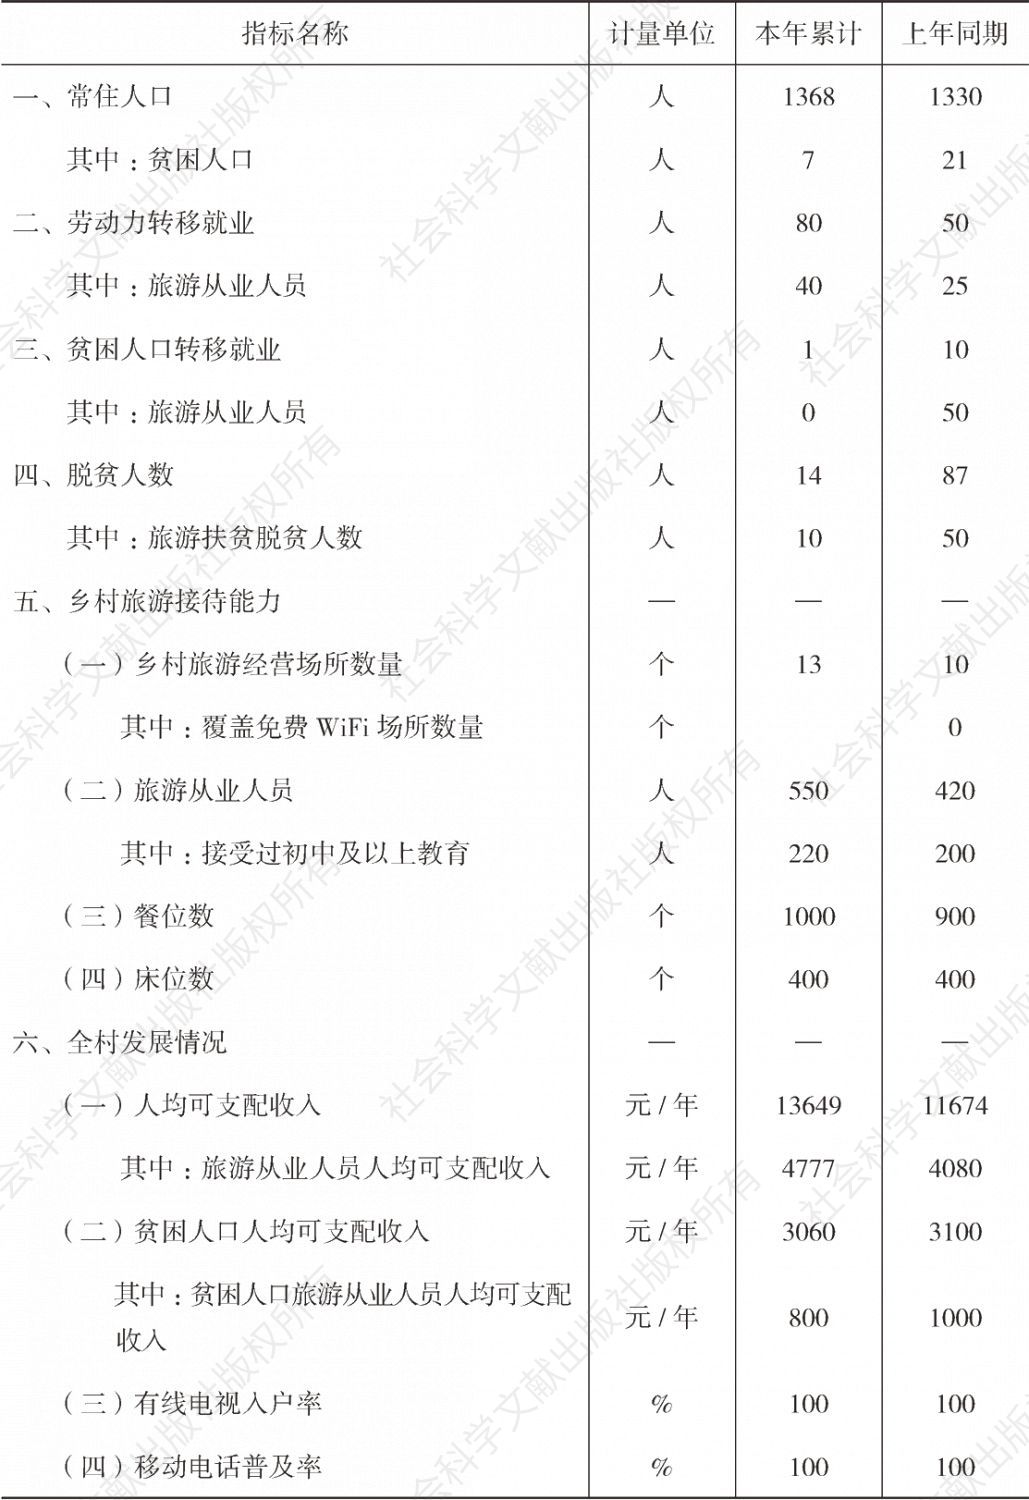 表5-1 2016年上半年赤溪村旅游统计数据